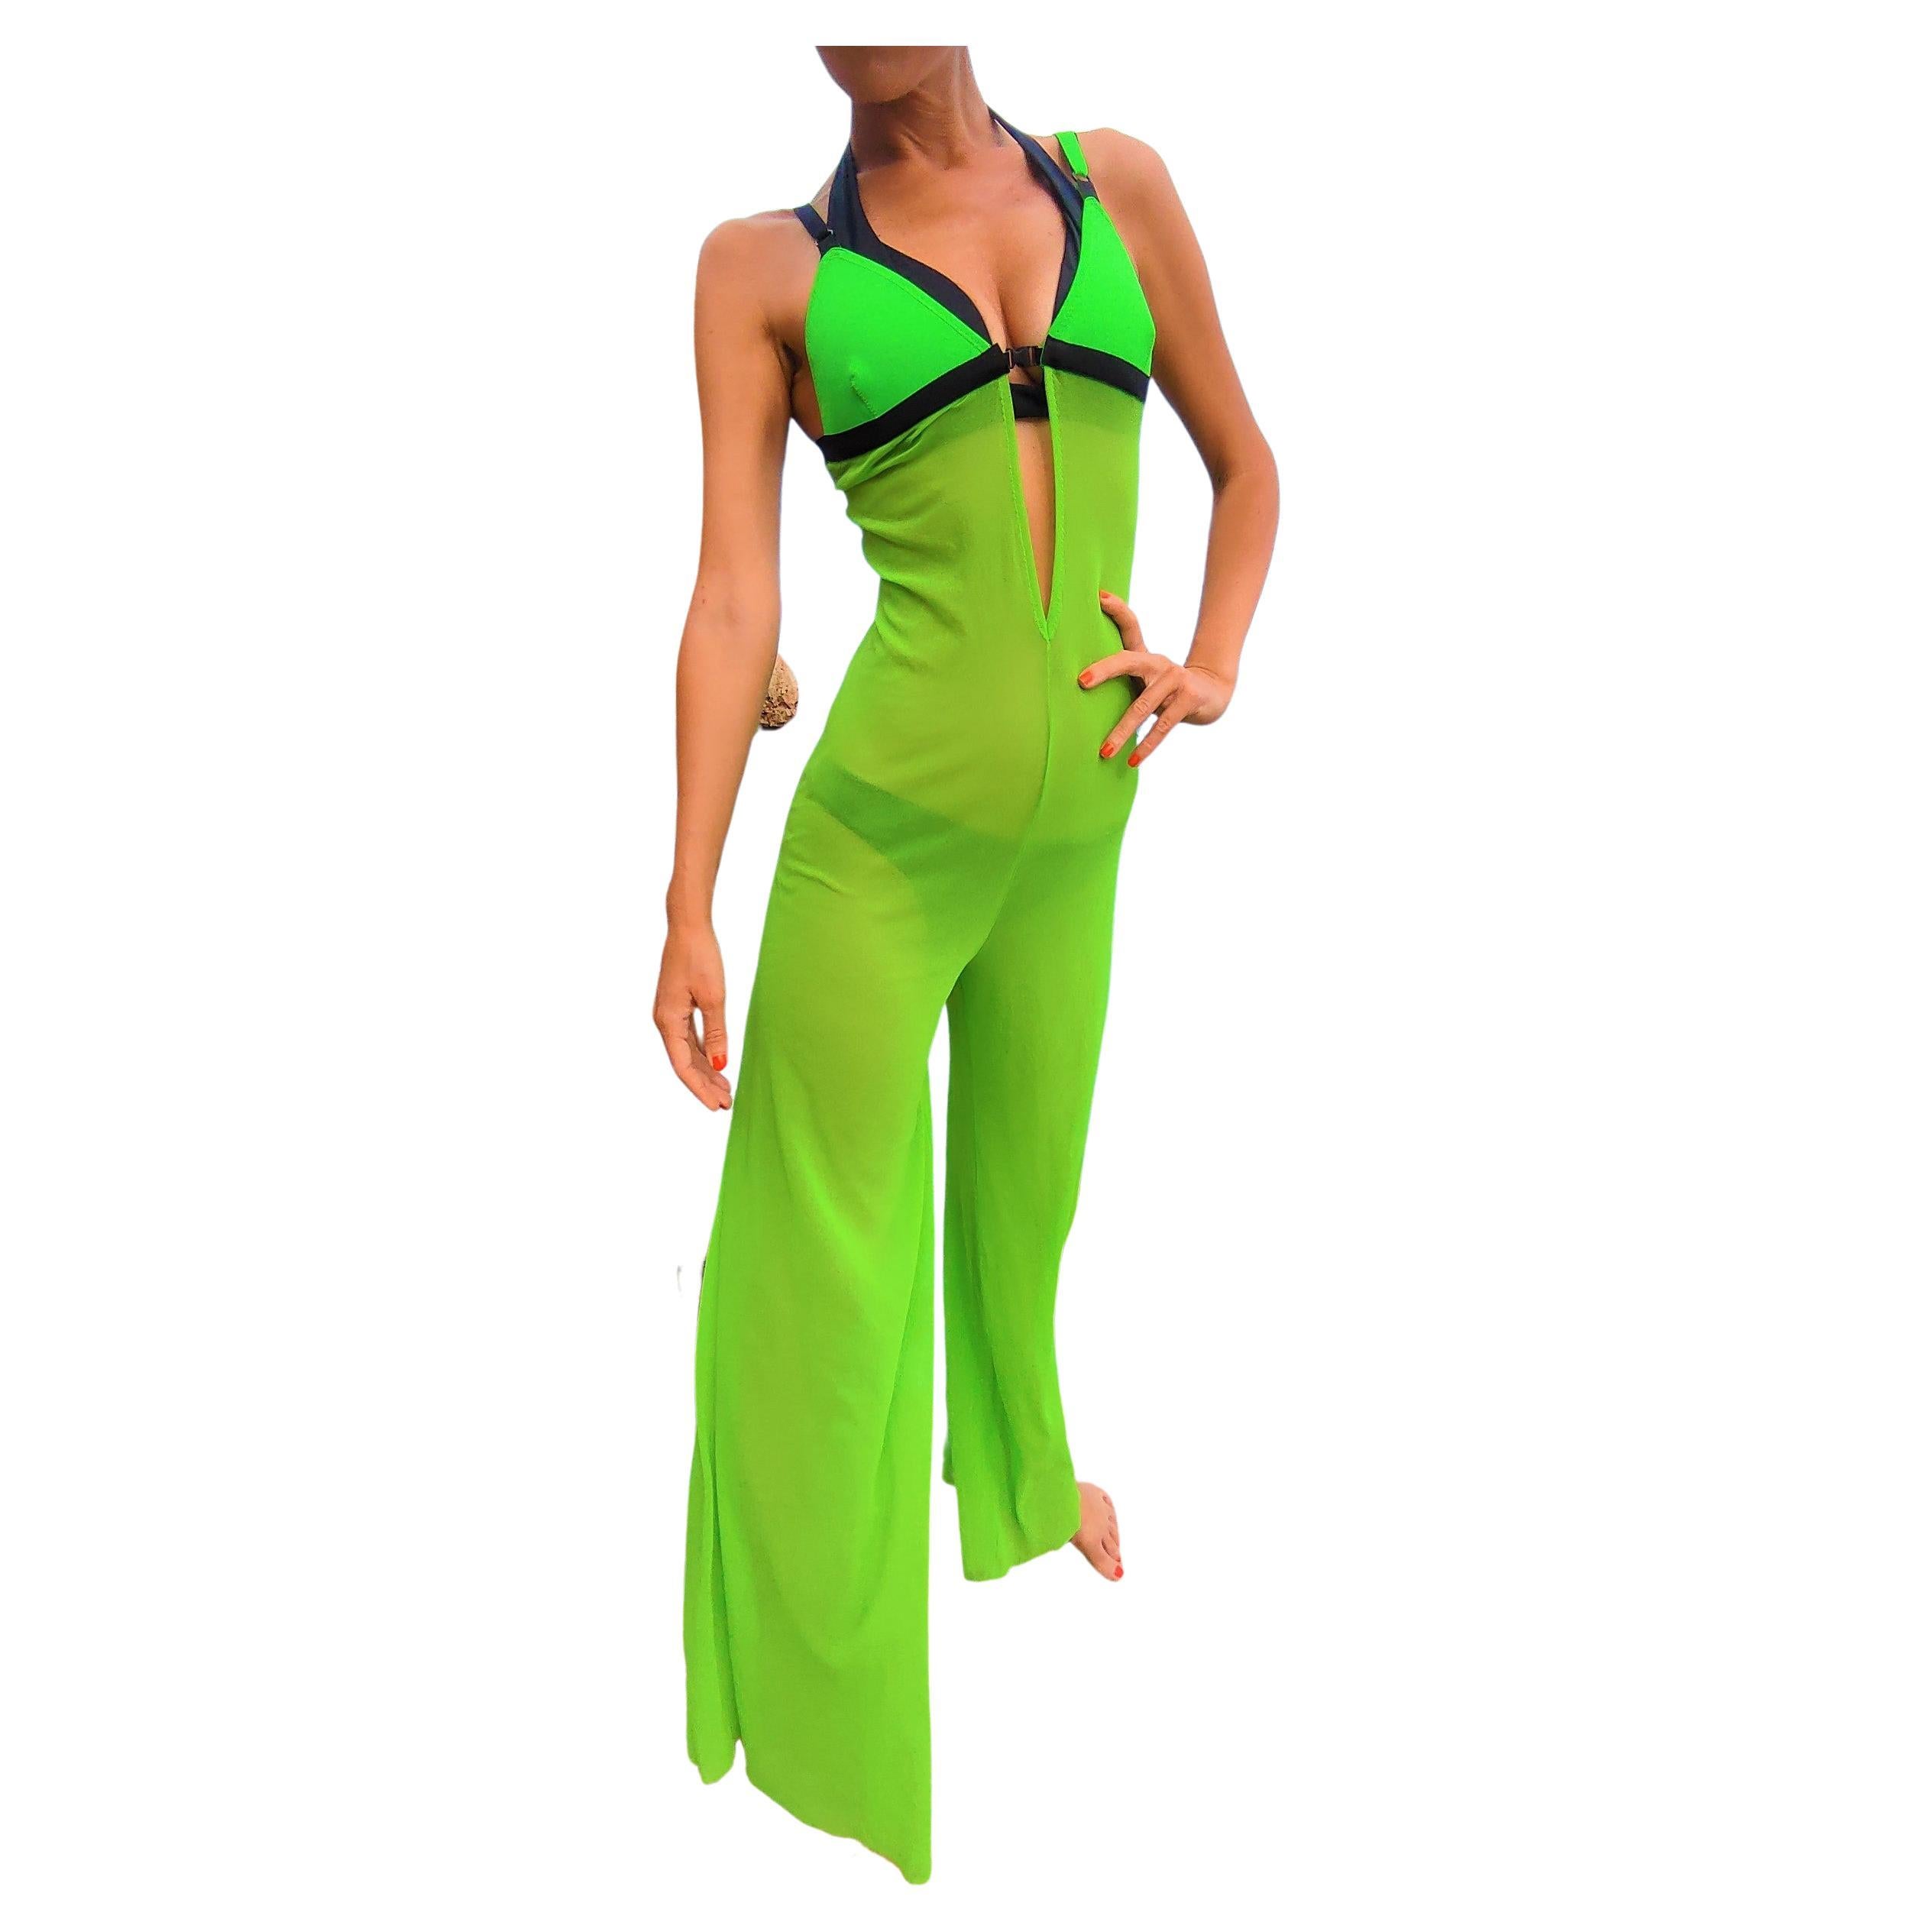 Jean Paul Gaultier Neon Green Cut Out Cutout Mesh Jumpsuit Dress Catsuit For Sale